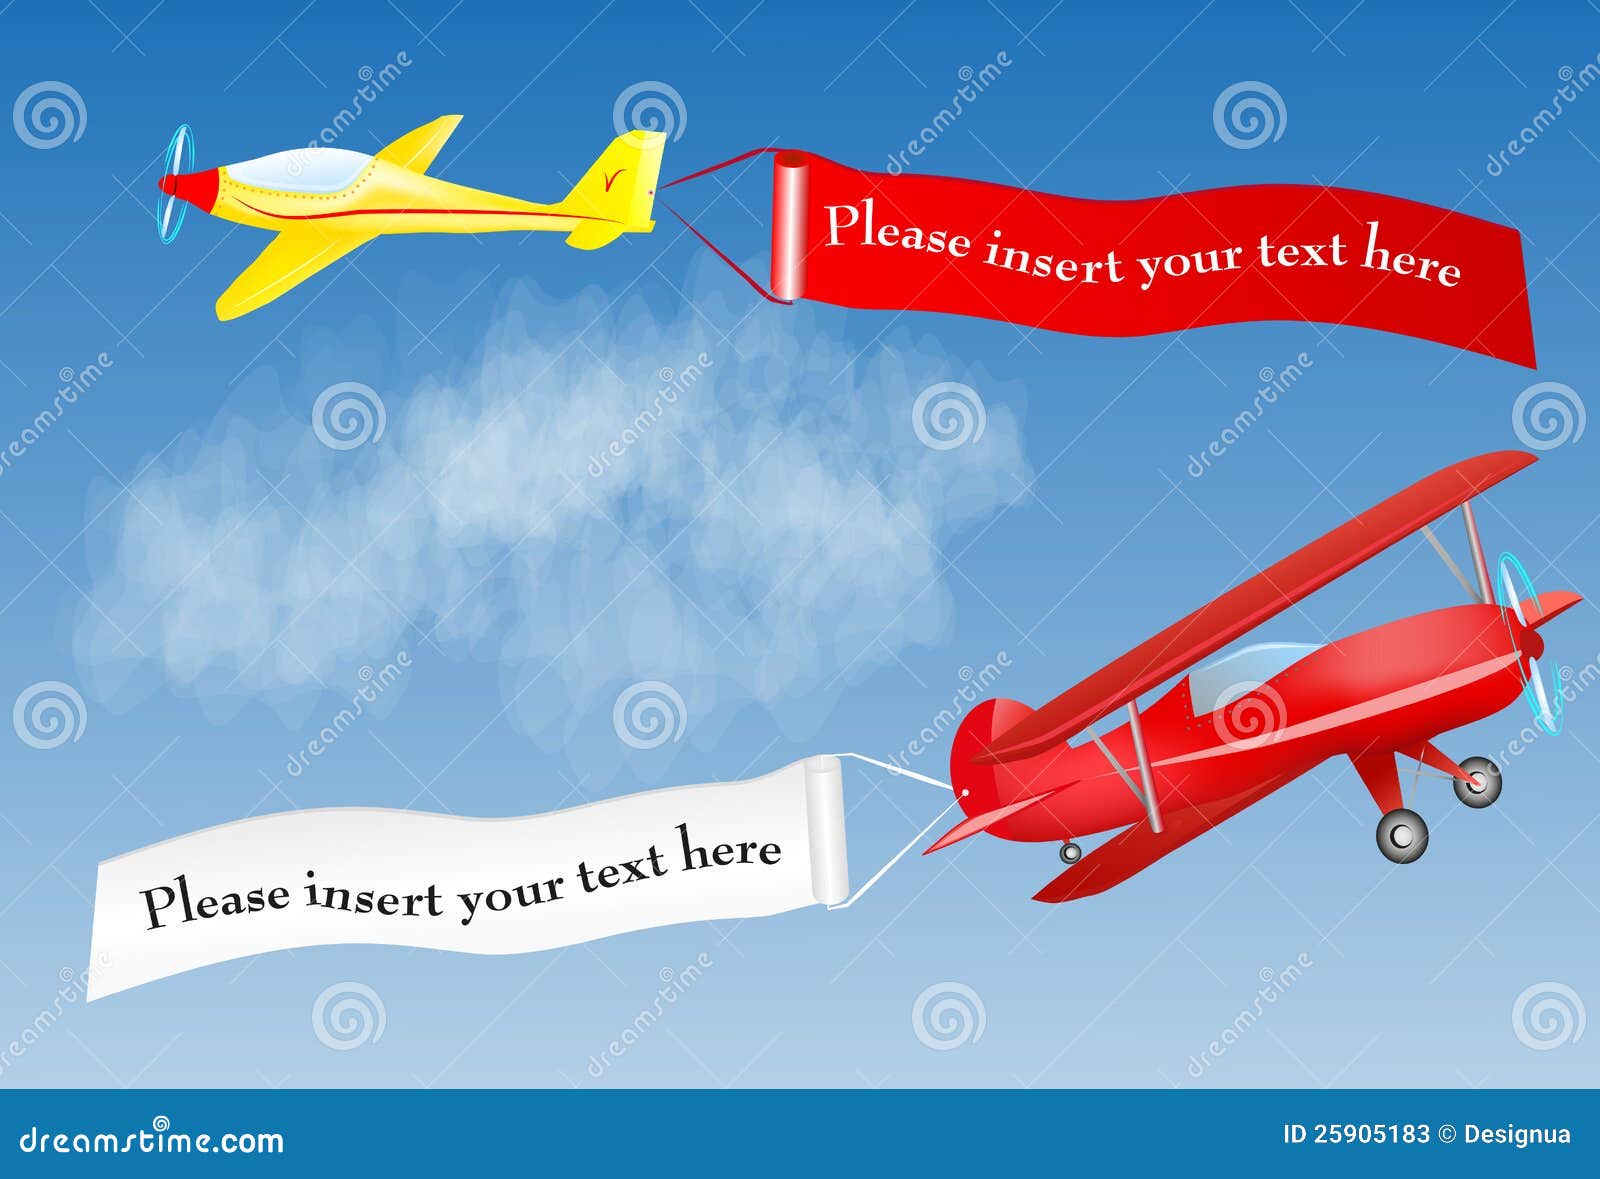 Banderole Publicitaire D Avion Avec La Place Pour Votre Texte Illustration De Vecteur Illustration Du Propulseur Pilote